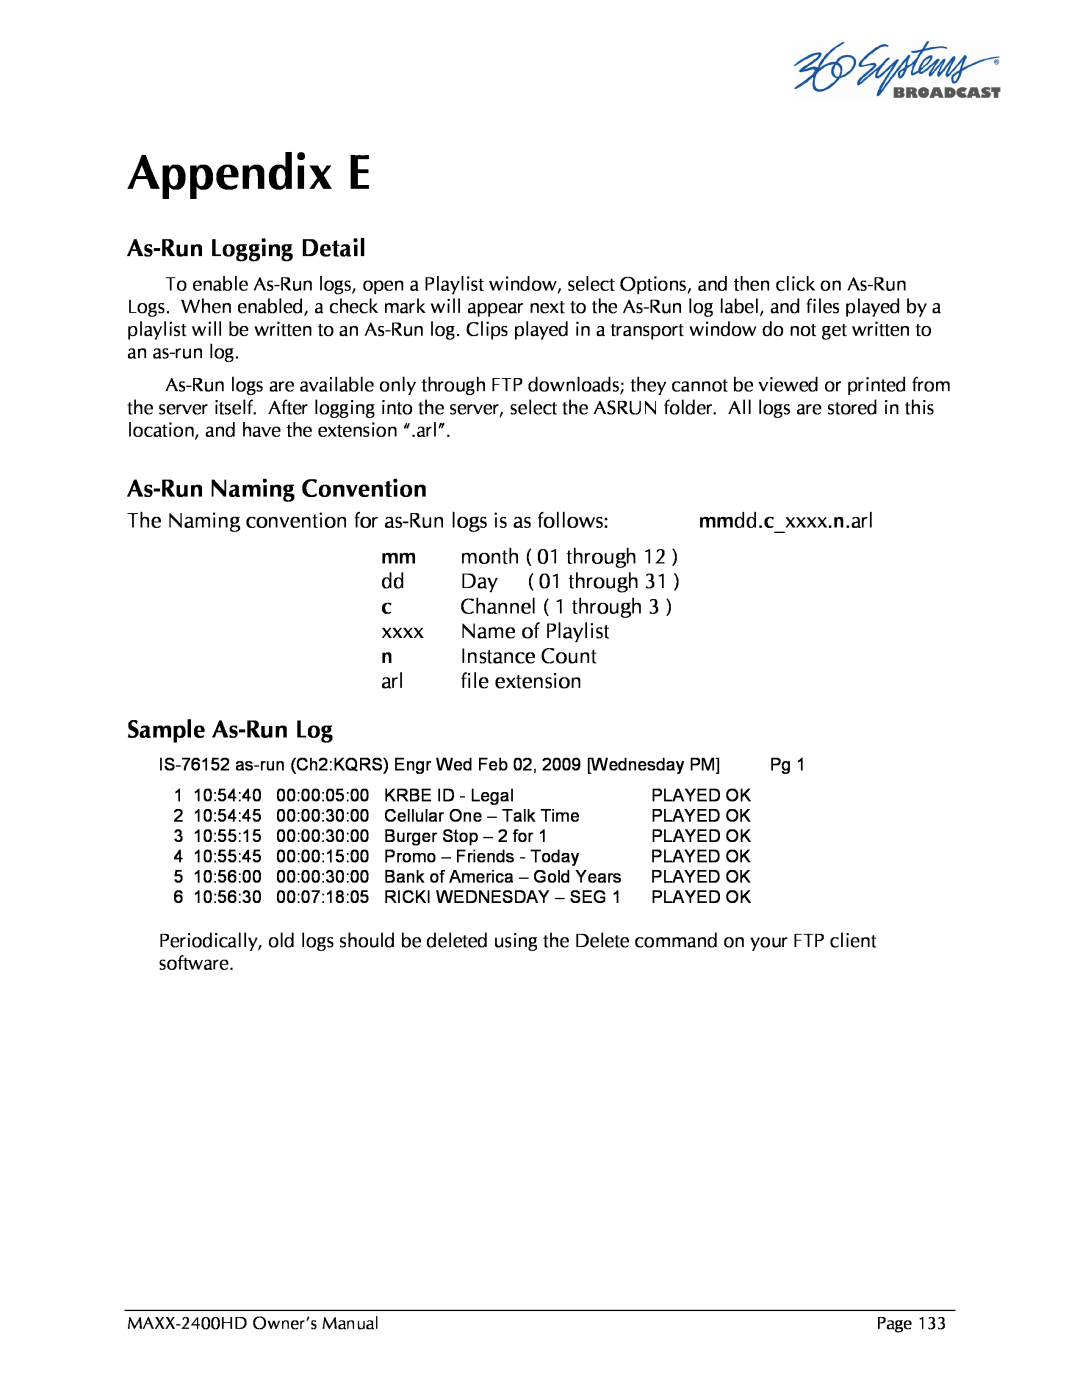 Maxxsonics MAXX-2400HD manual Appendix E, As-RunLogging Detail, As-RunNaming Convention, Sample As-RunLog 